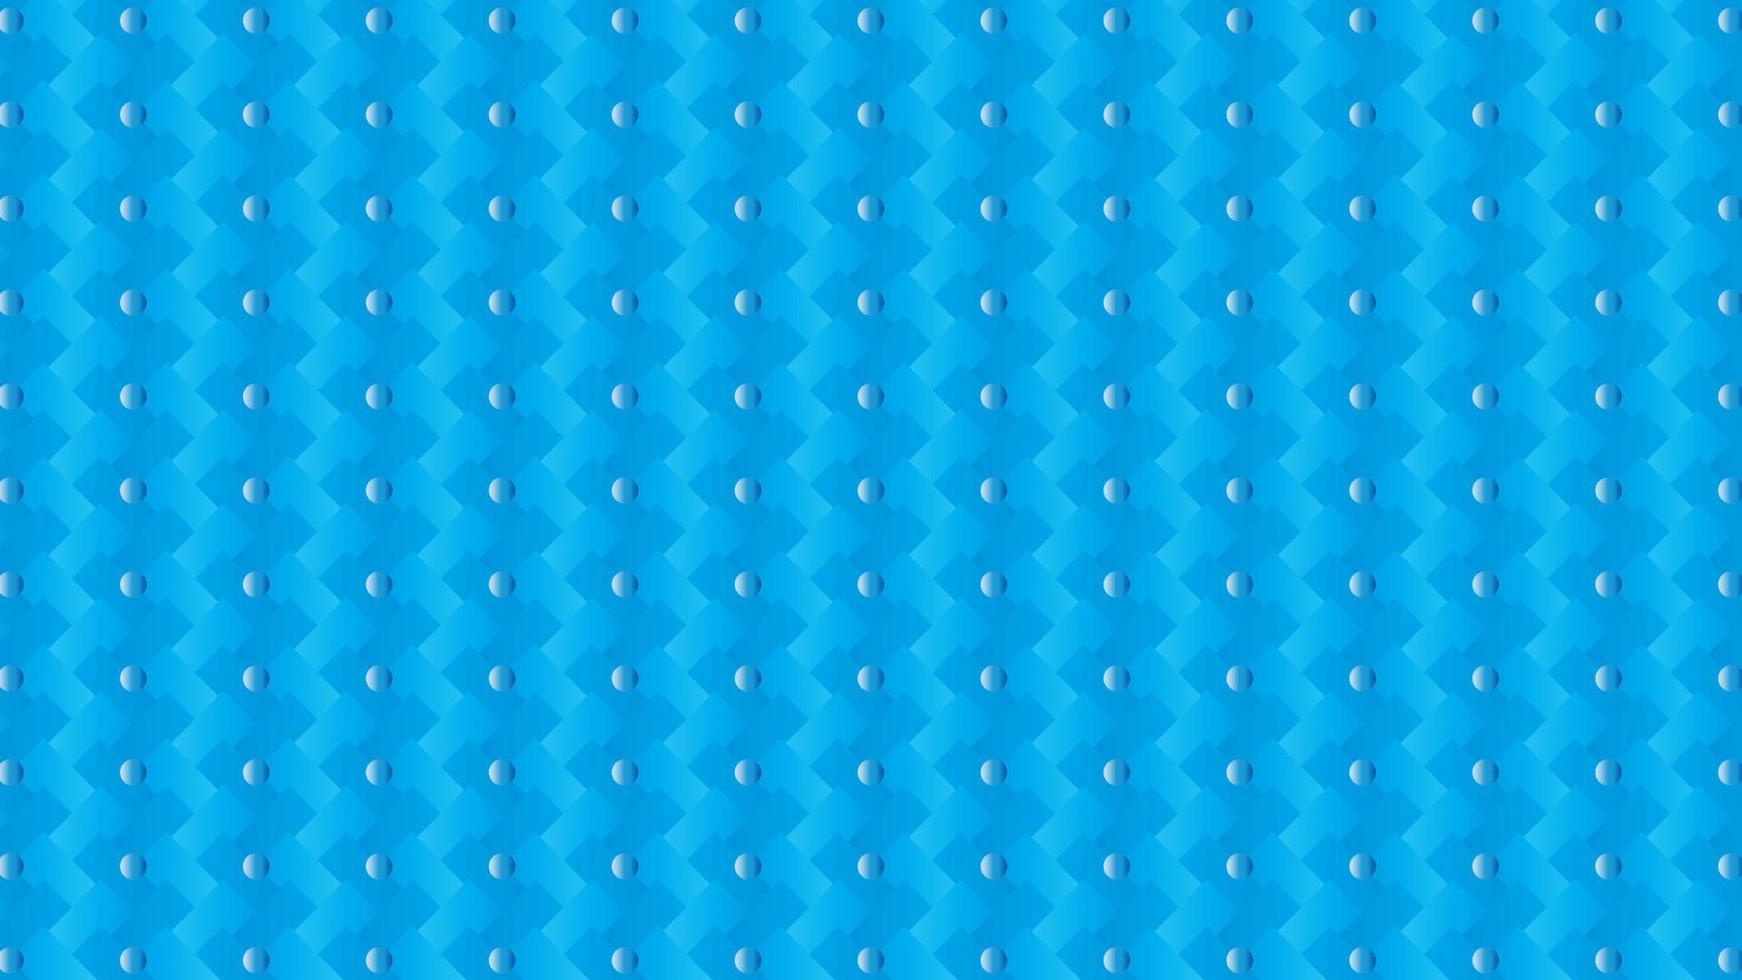 fondo abstracto de pequeños puntos sobre fondo azul, fondo azul con patrón de puntos vector